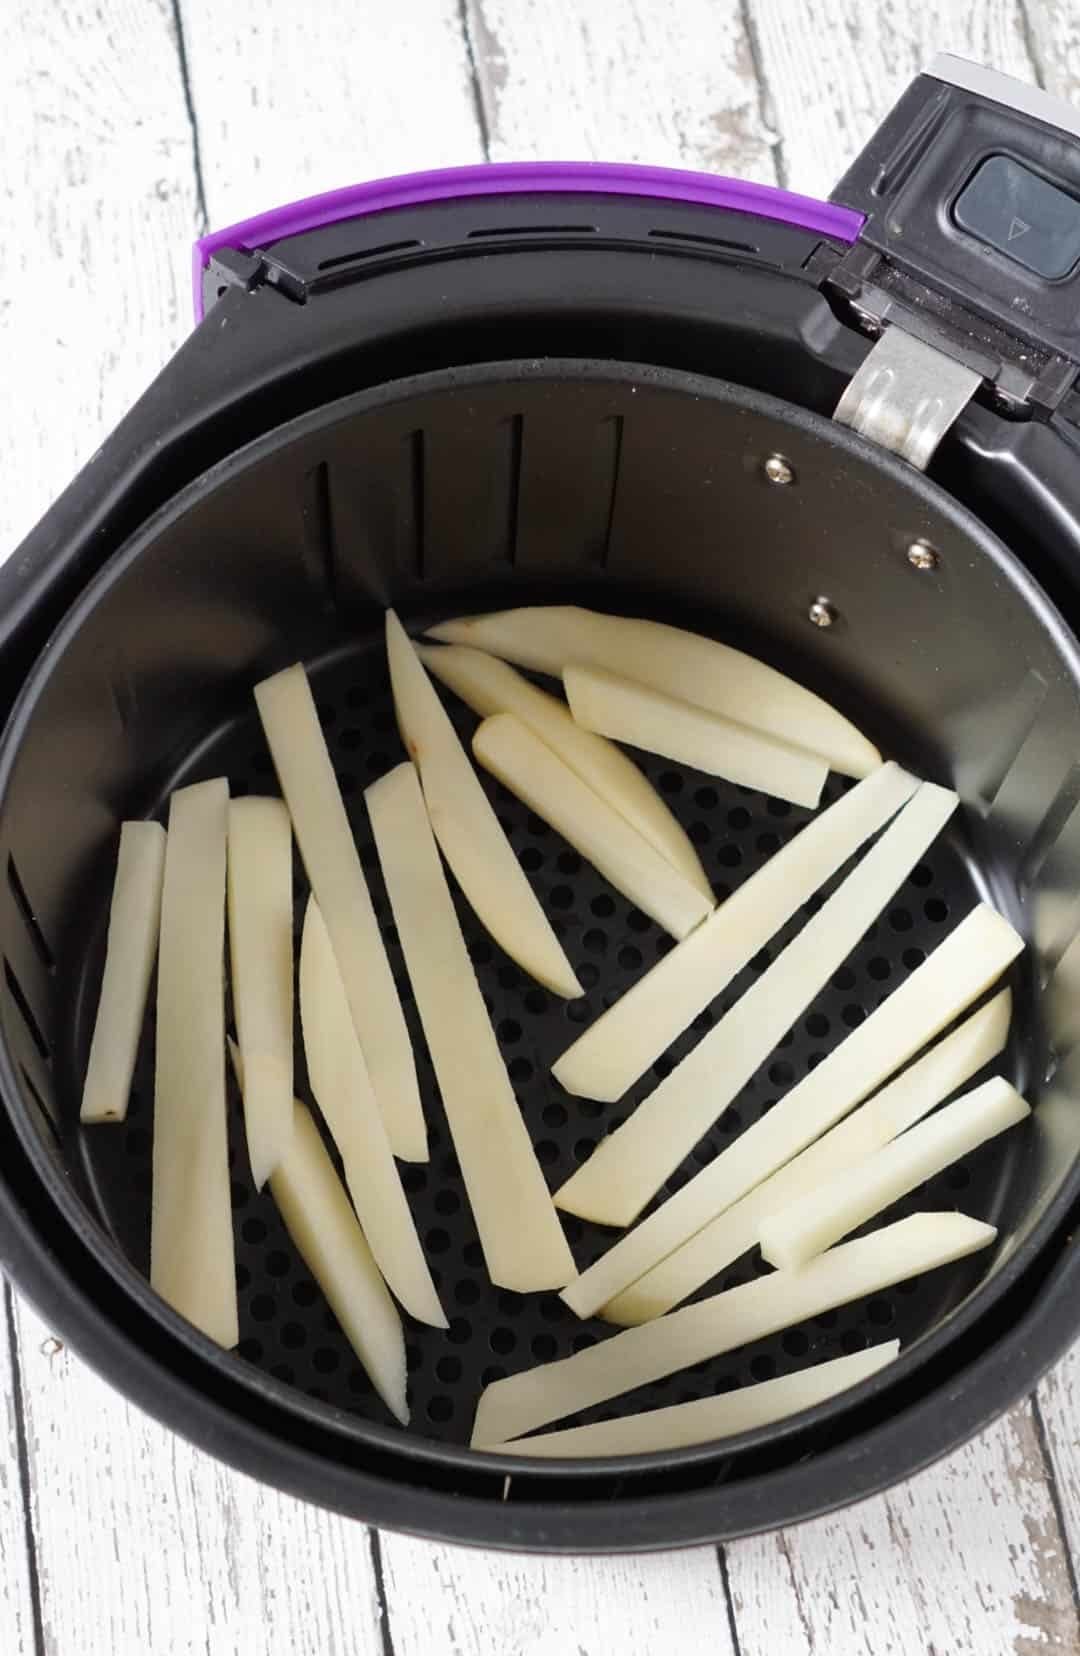 potato fries in an air fryer basket